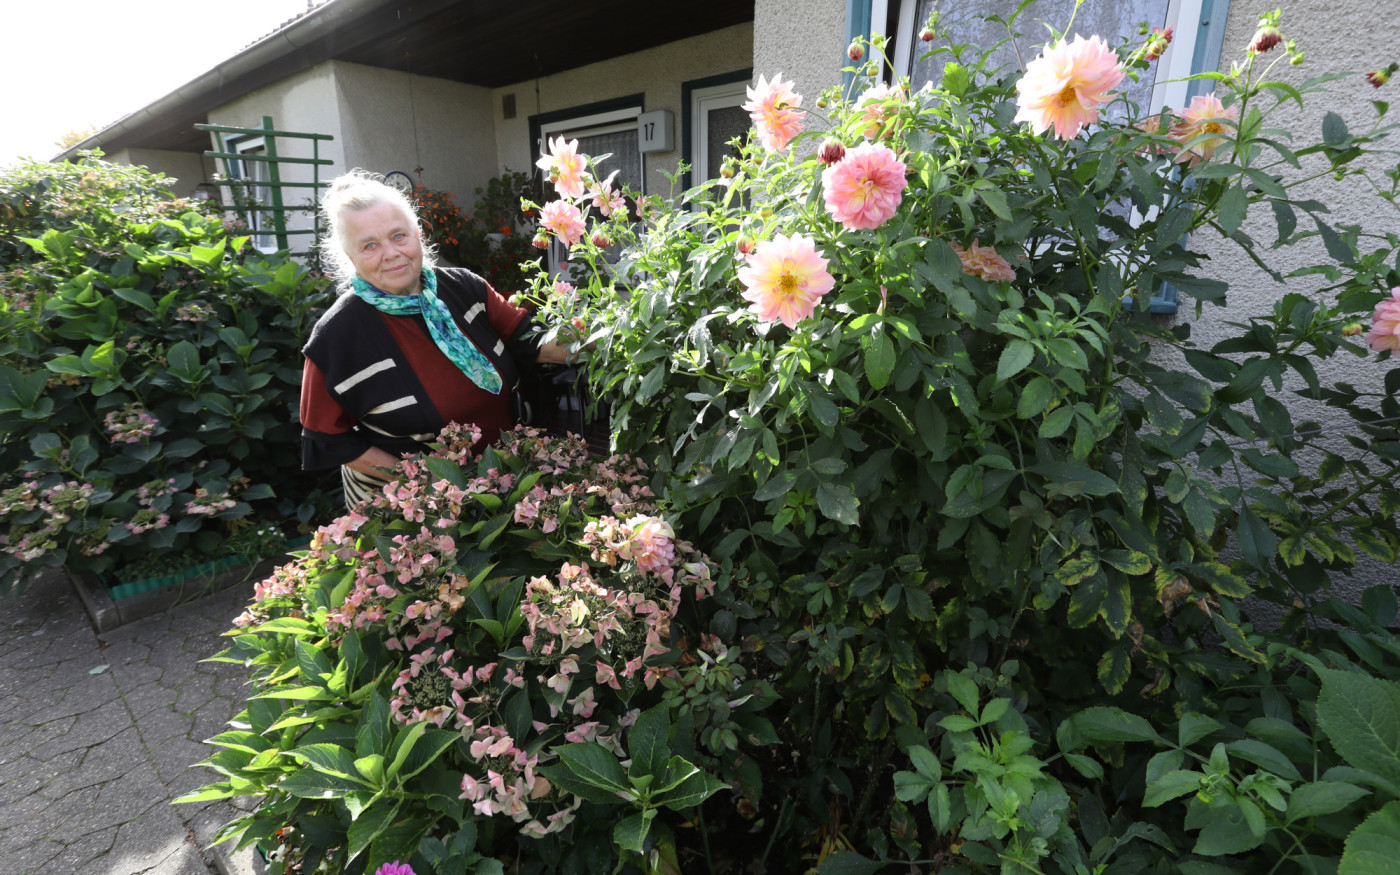 Hortensien, Dahlien und Rosen schmücken die Terrasse - Naturmensch Anna Rau ist Finalistin beim Gifhorner Balkon-Wettbewerb